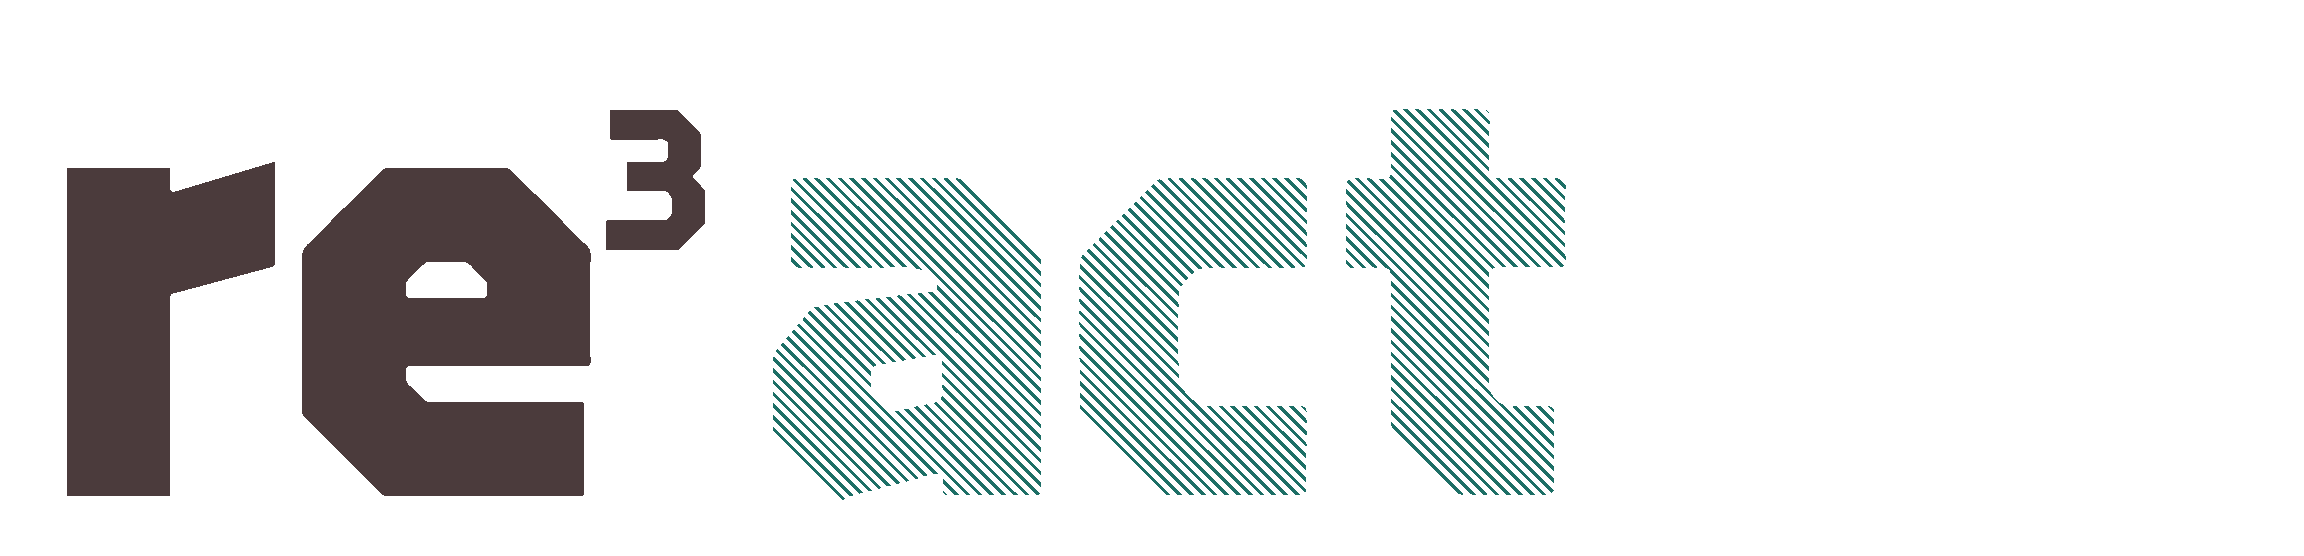 re3 logo